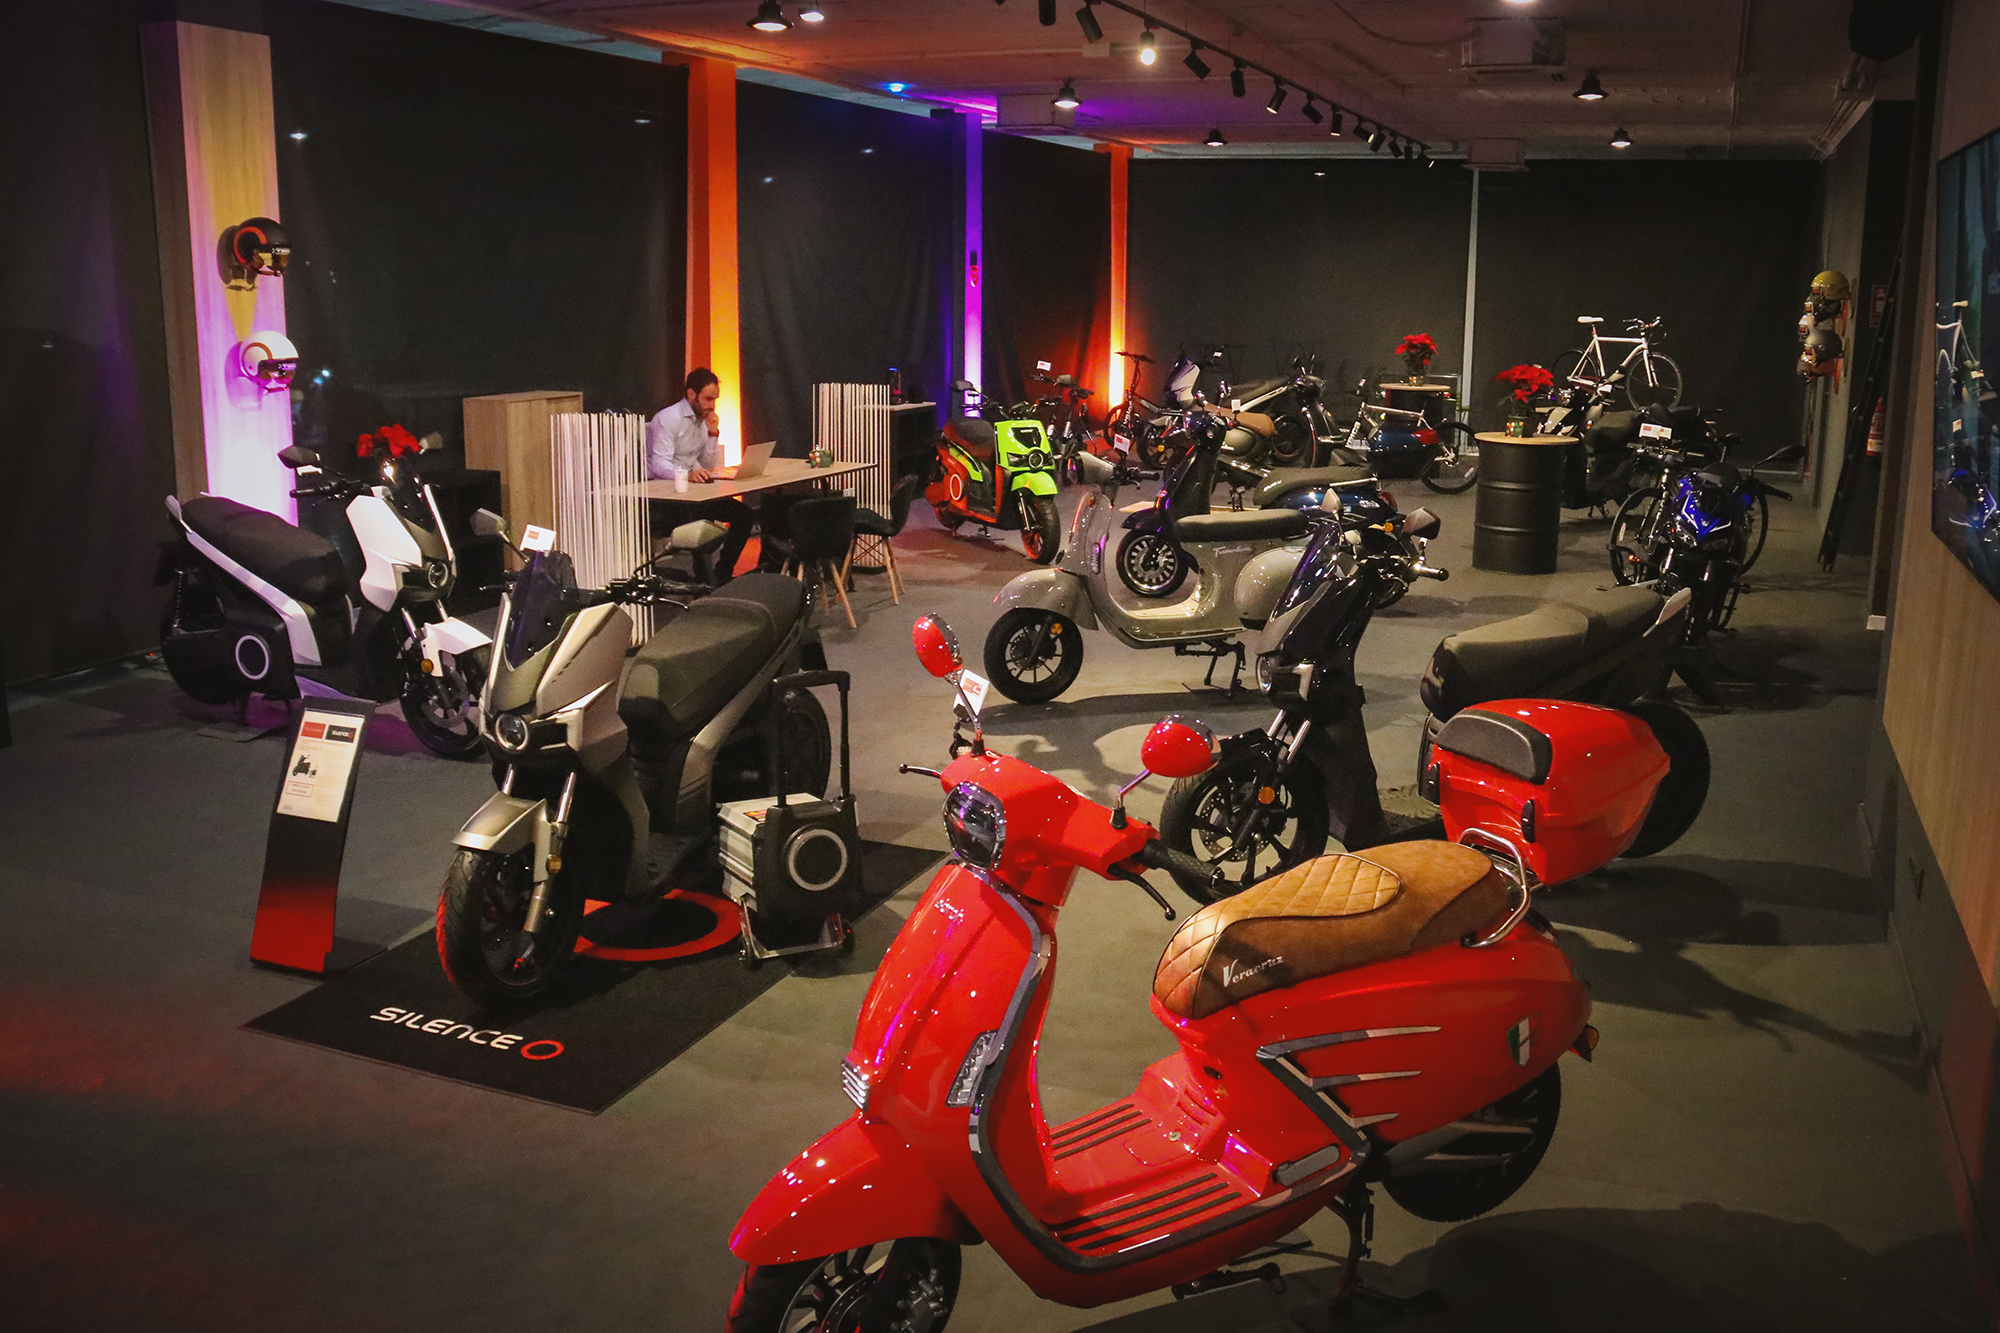 El nuevo concesionario de motos de Nani Grupo Empresarial ya ha abierto sus instalaciones pesado